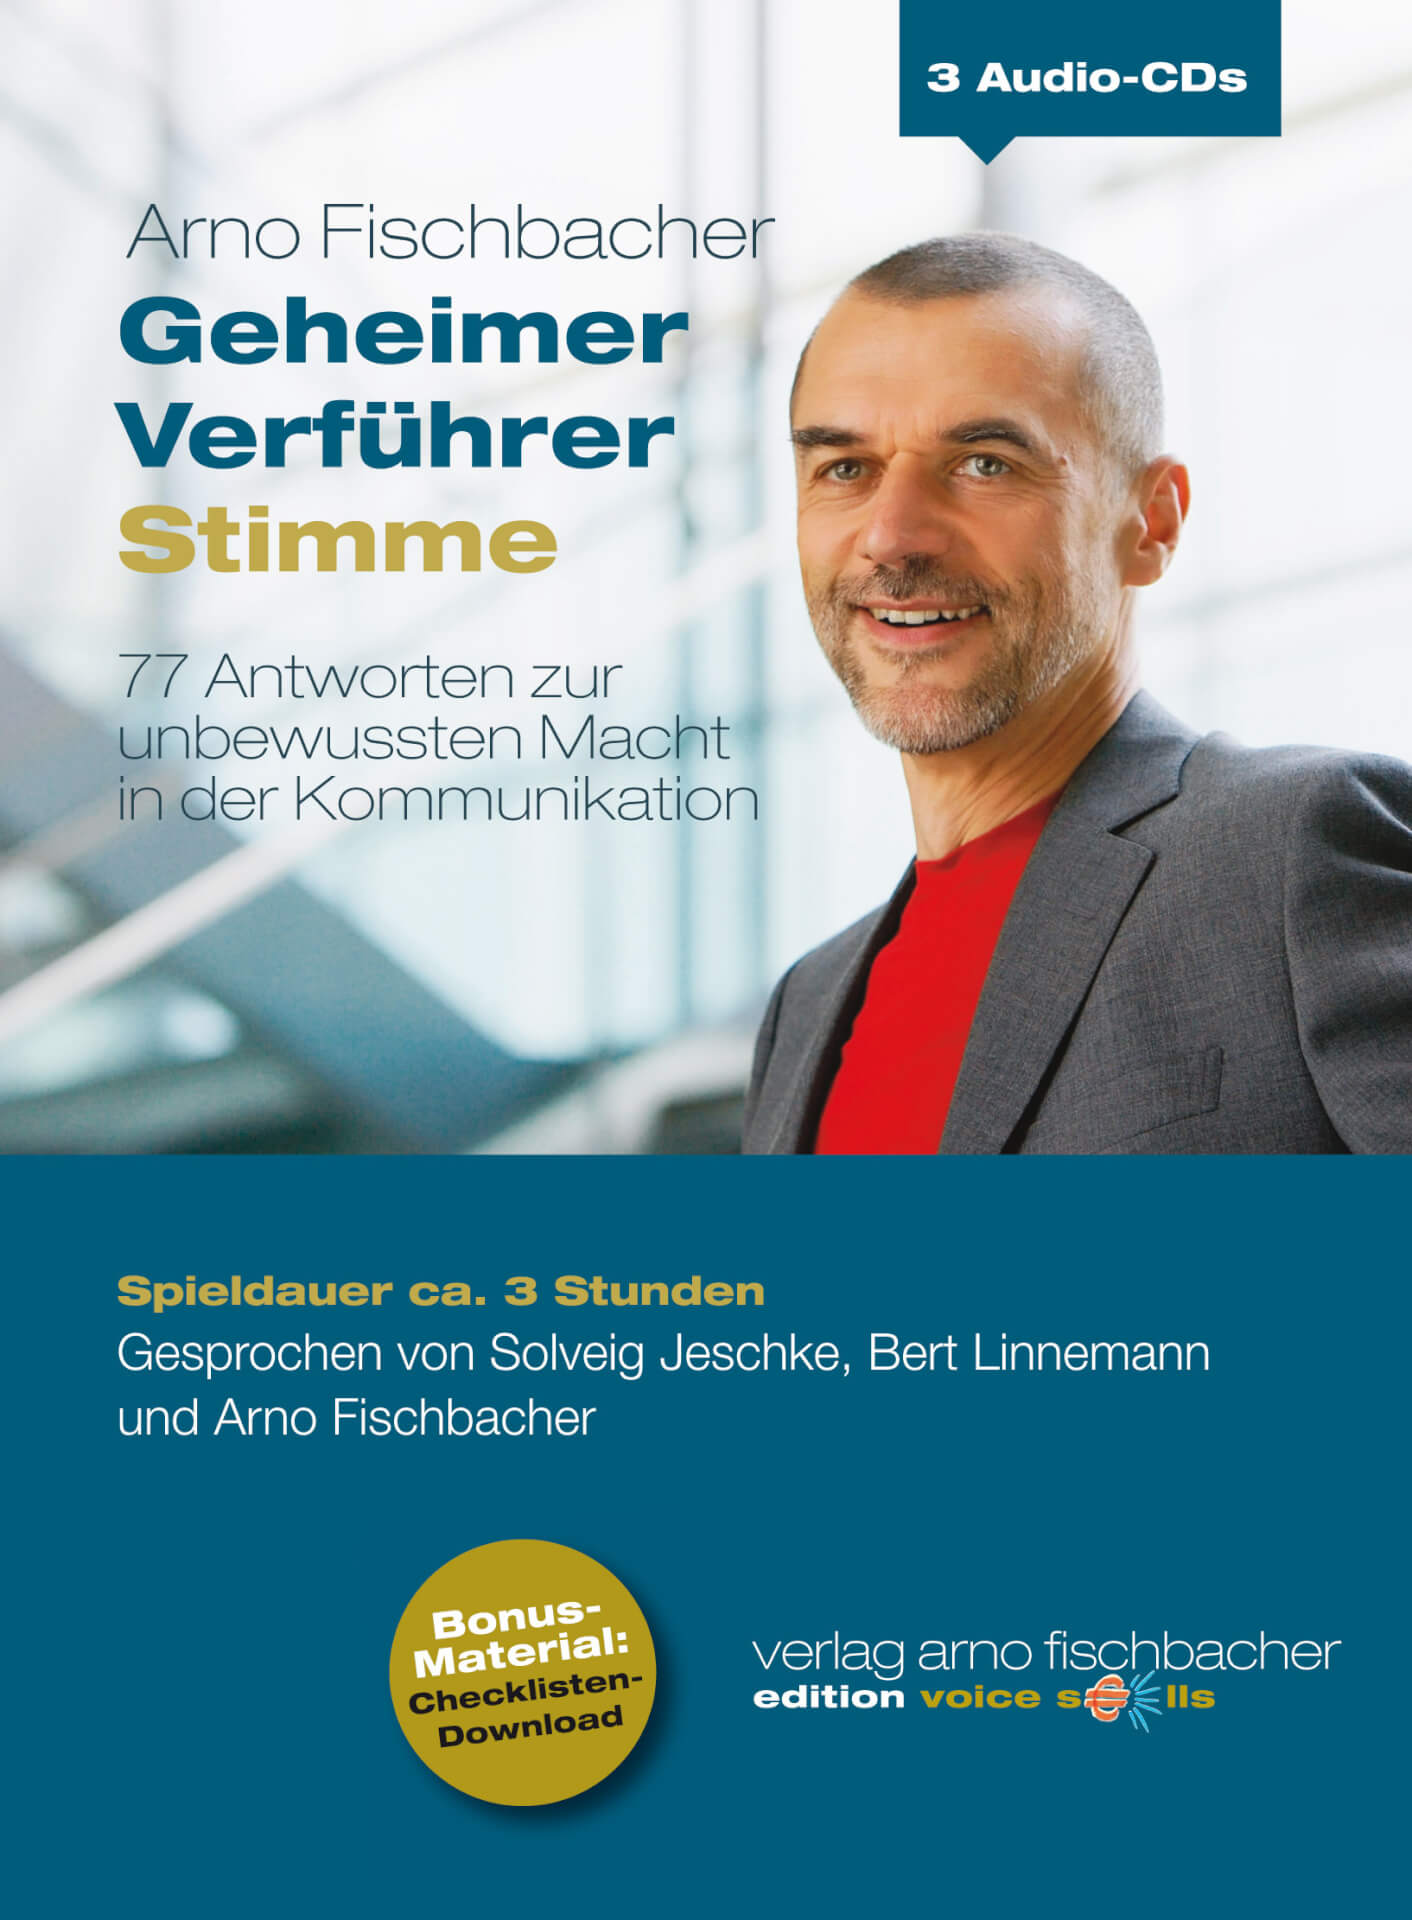 Lächelnder Mann in Geschäftskleidung mit Textüberlagerung, die auf ein deutsches Audio-CD-Produkt mit dem Titel „Gehörstufen Stimme“ von Arno Fischbacher hinweist.